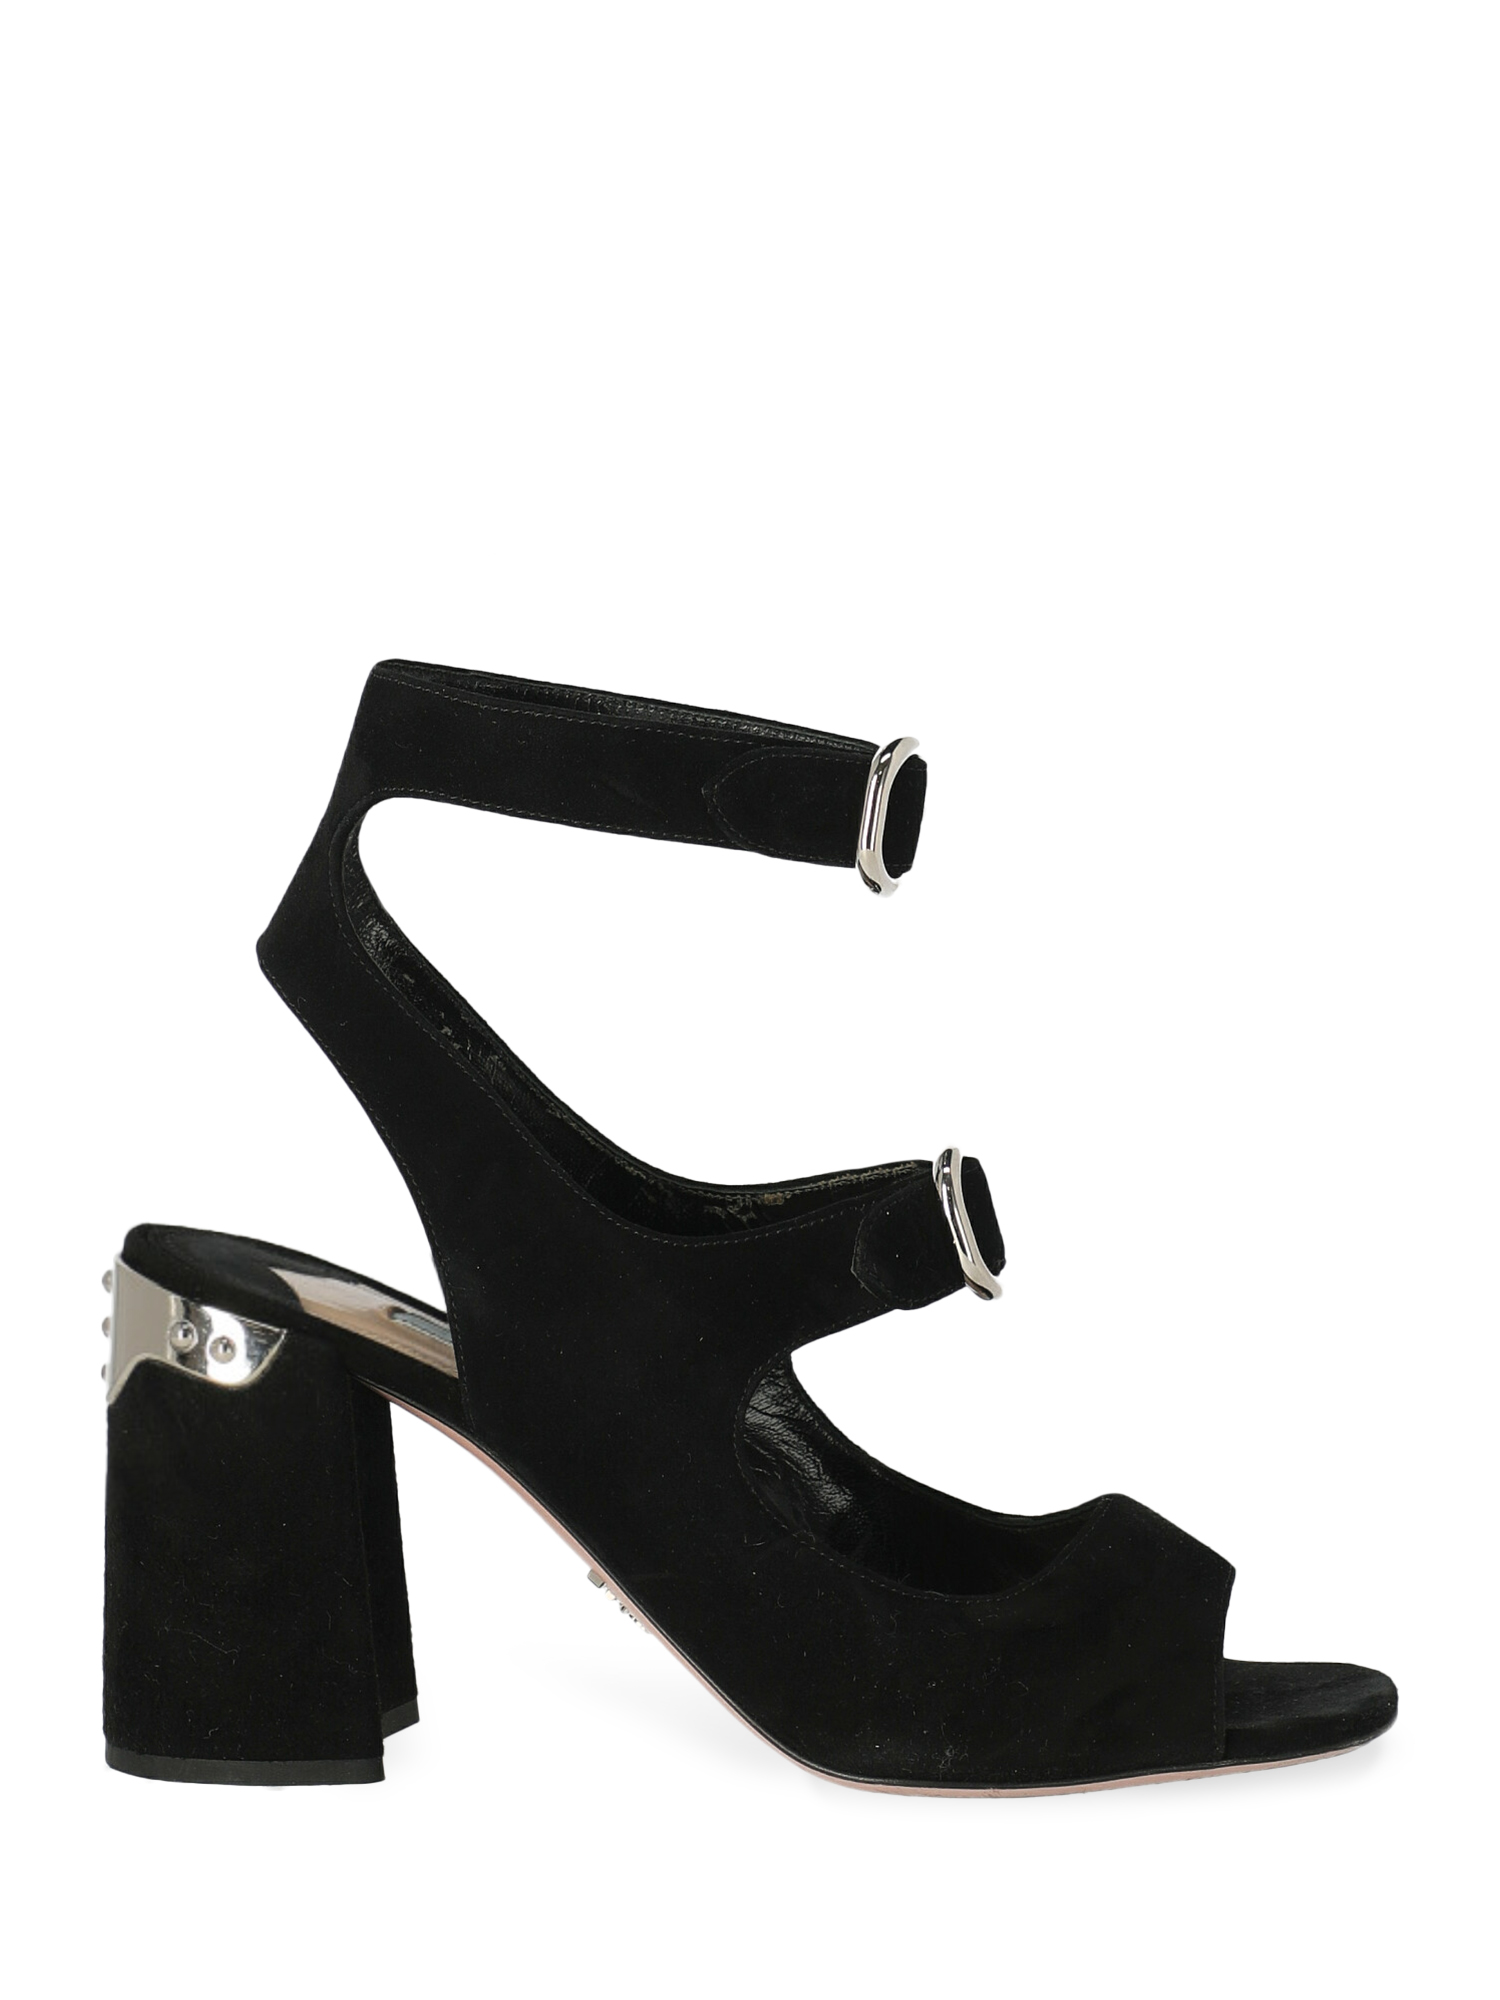 Sandales Pour Femme - Prada - En Leather Black - Taille: IT 38.5 - EU 38.5